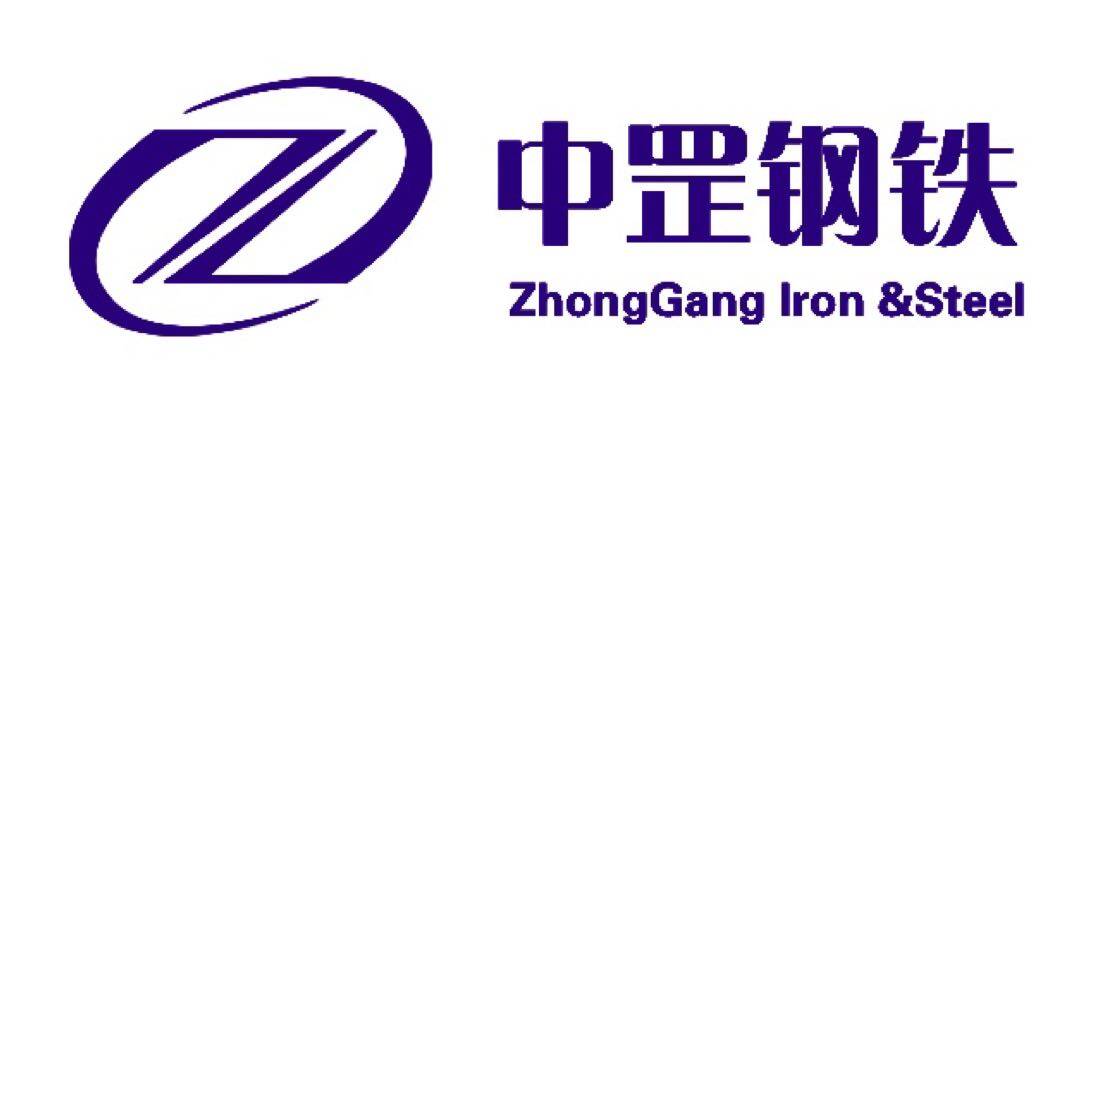 佛山市人中罡钢铁贸易有限公司logo